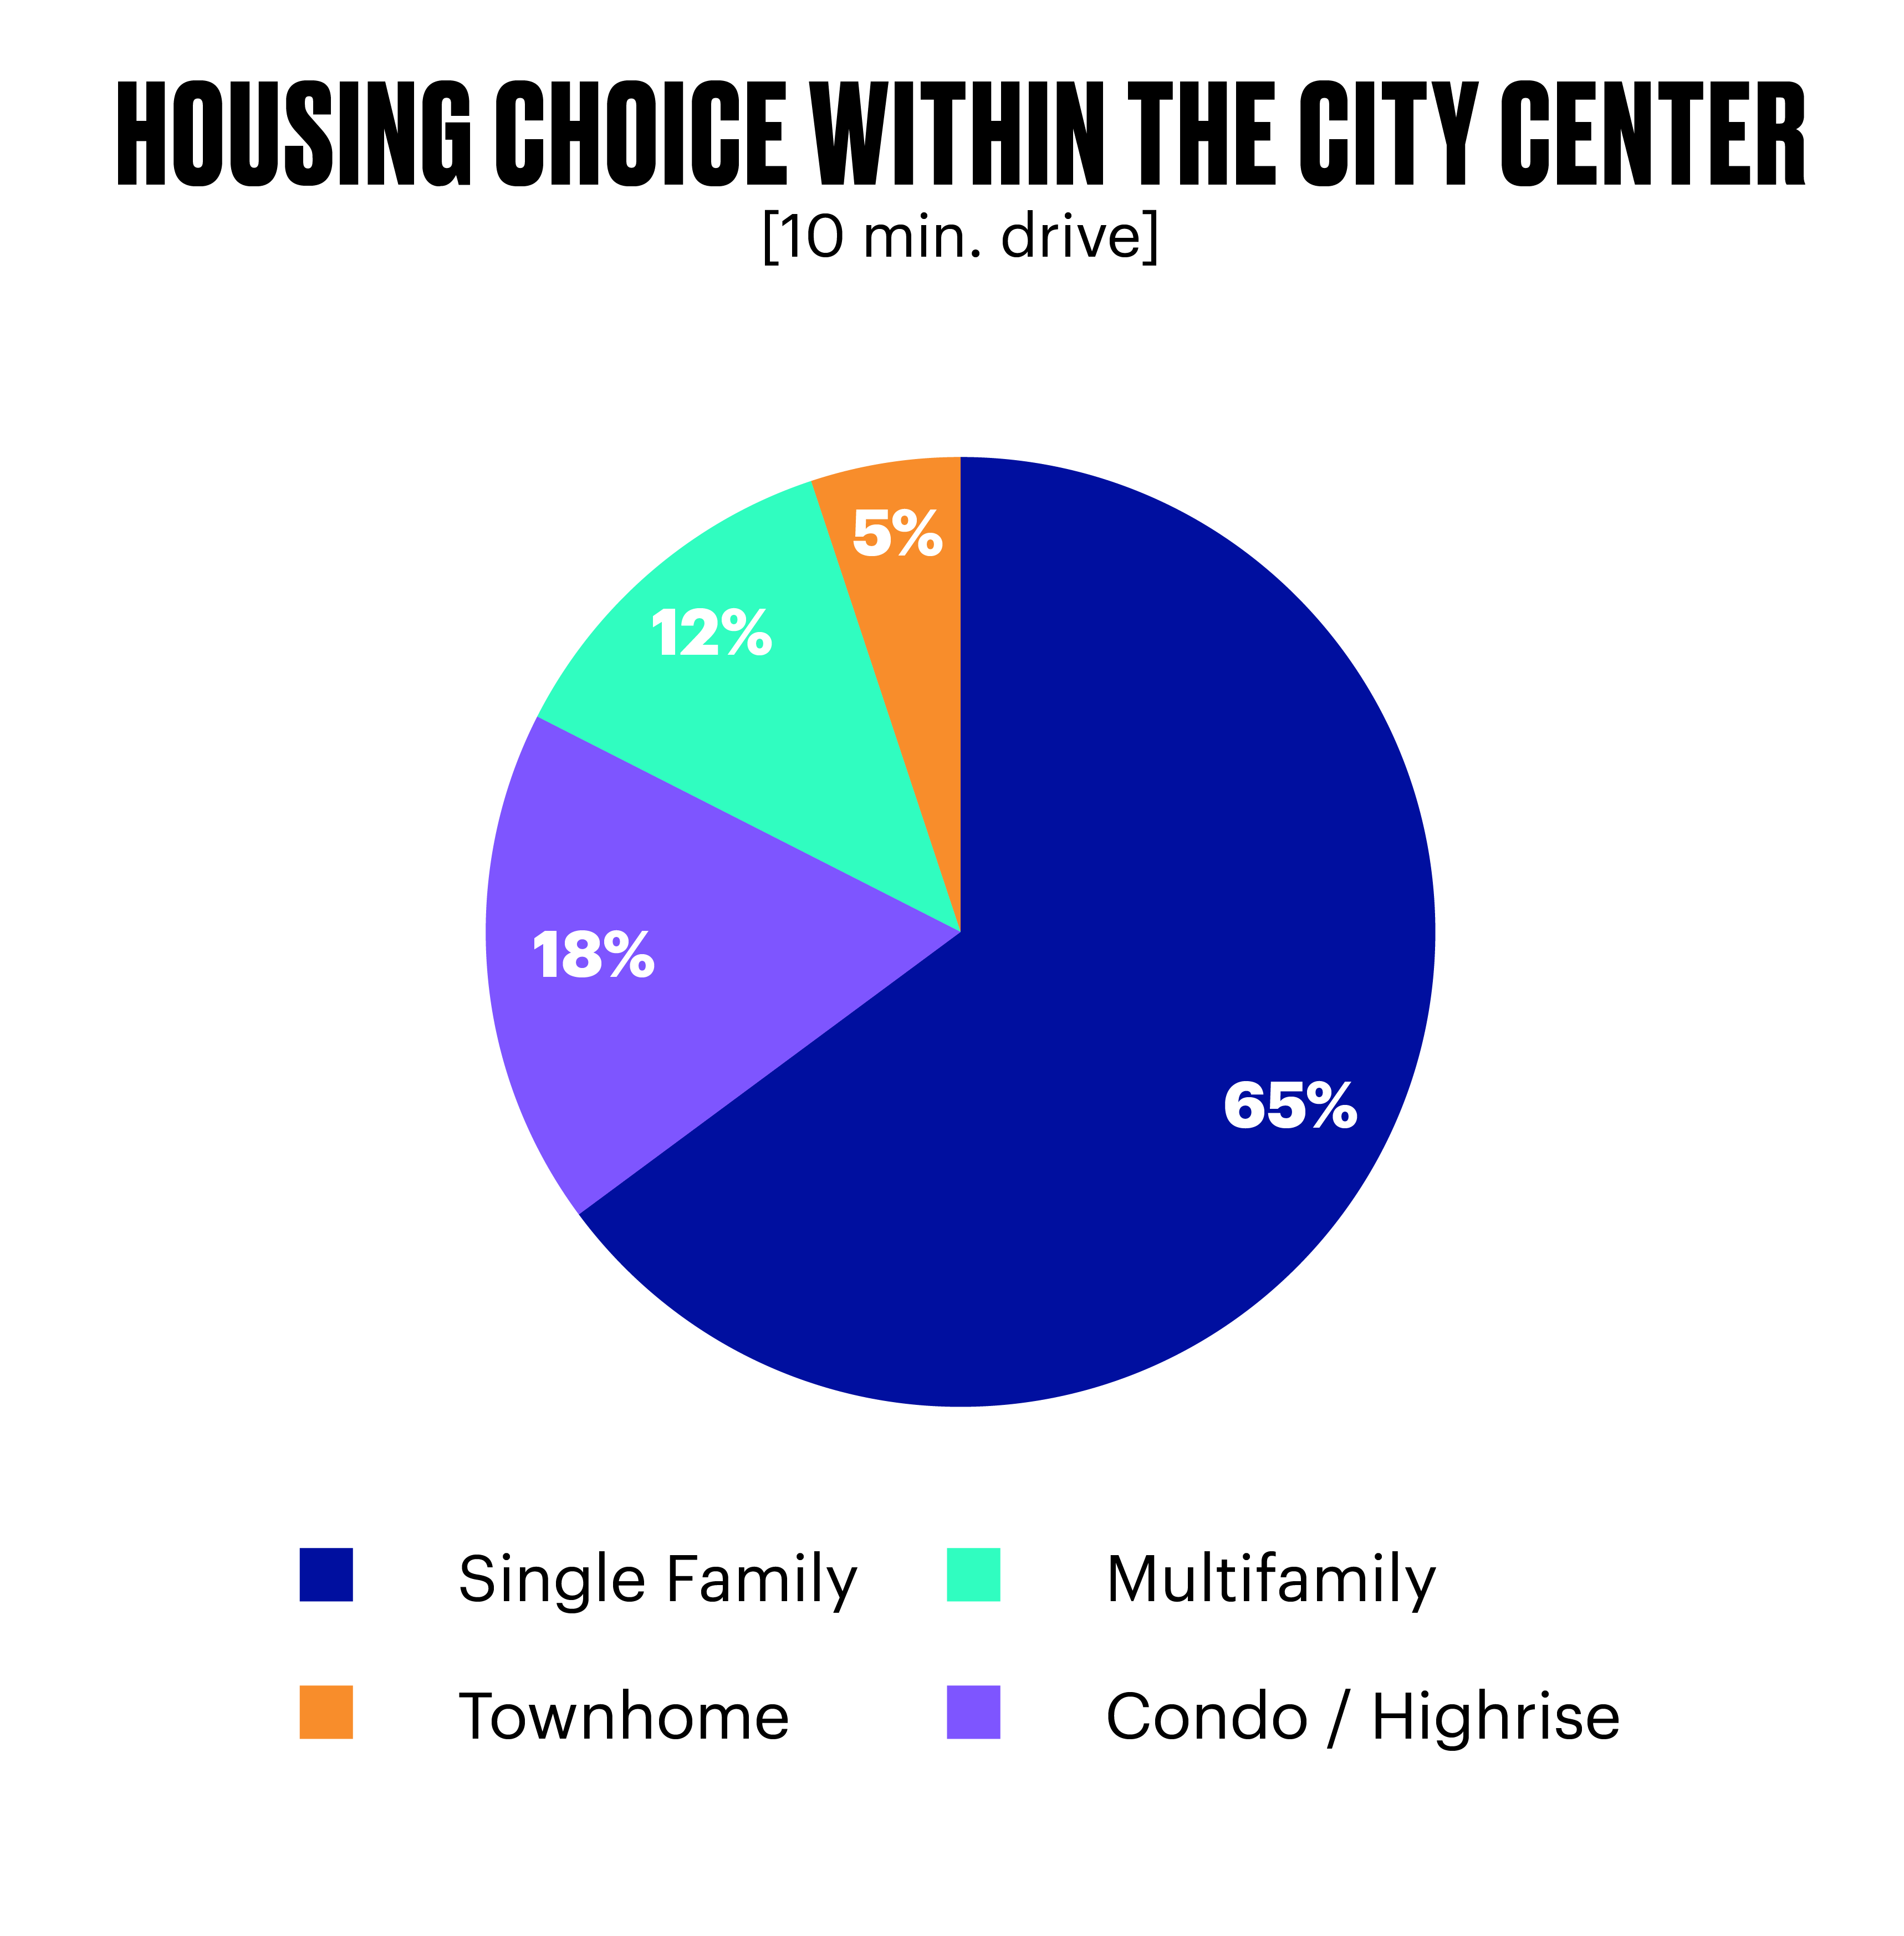 housing choice